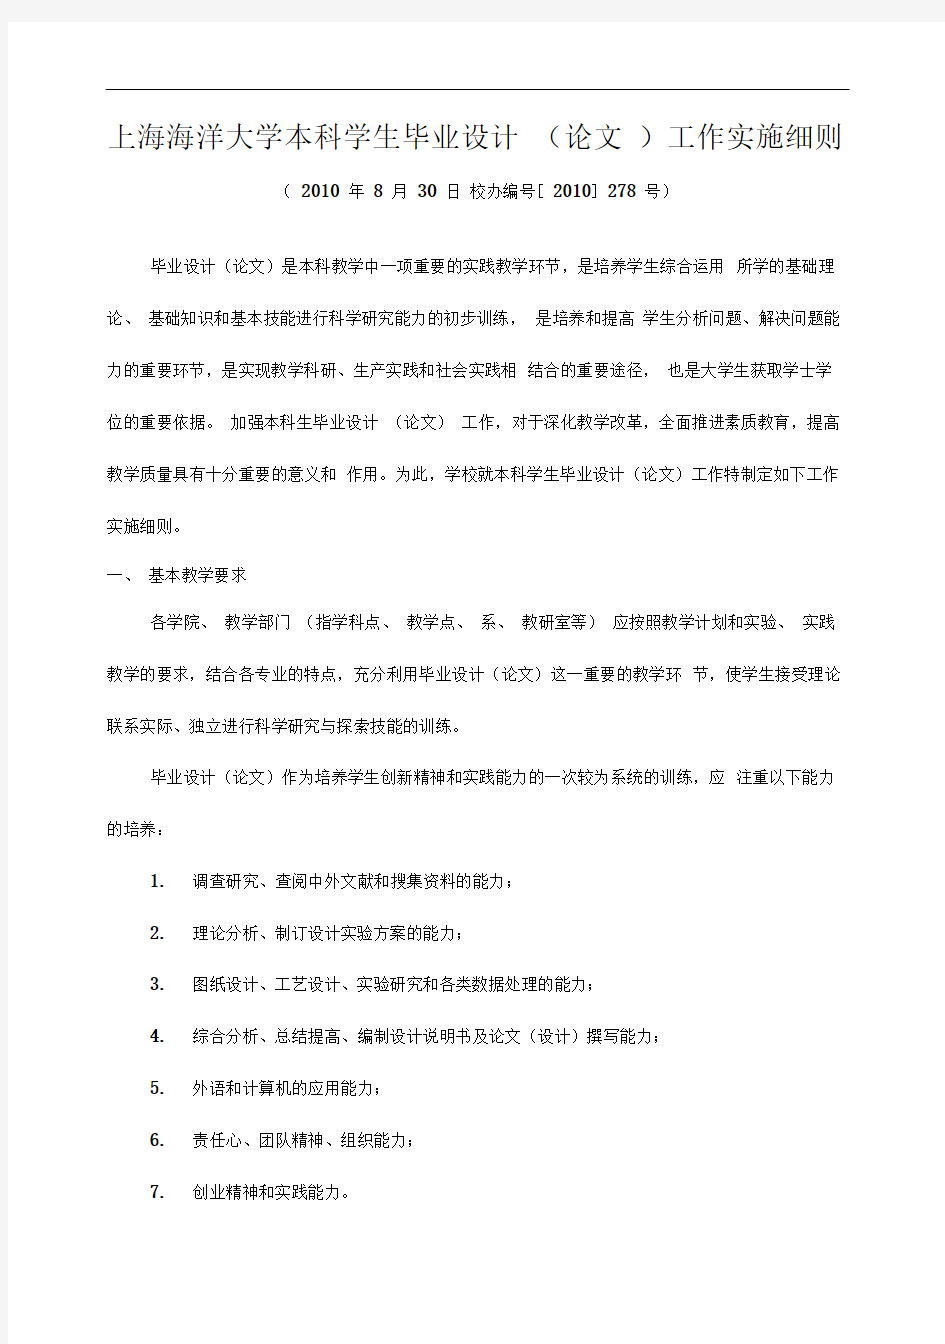 (完整版)上海海洋大学本科学生毕业设计(论文)工作实施细则